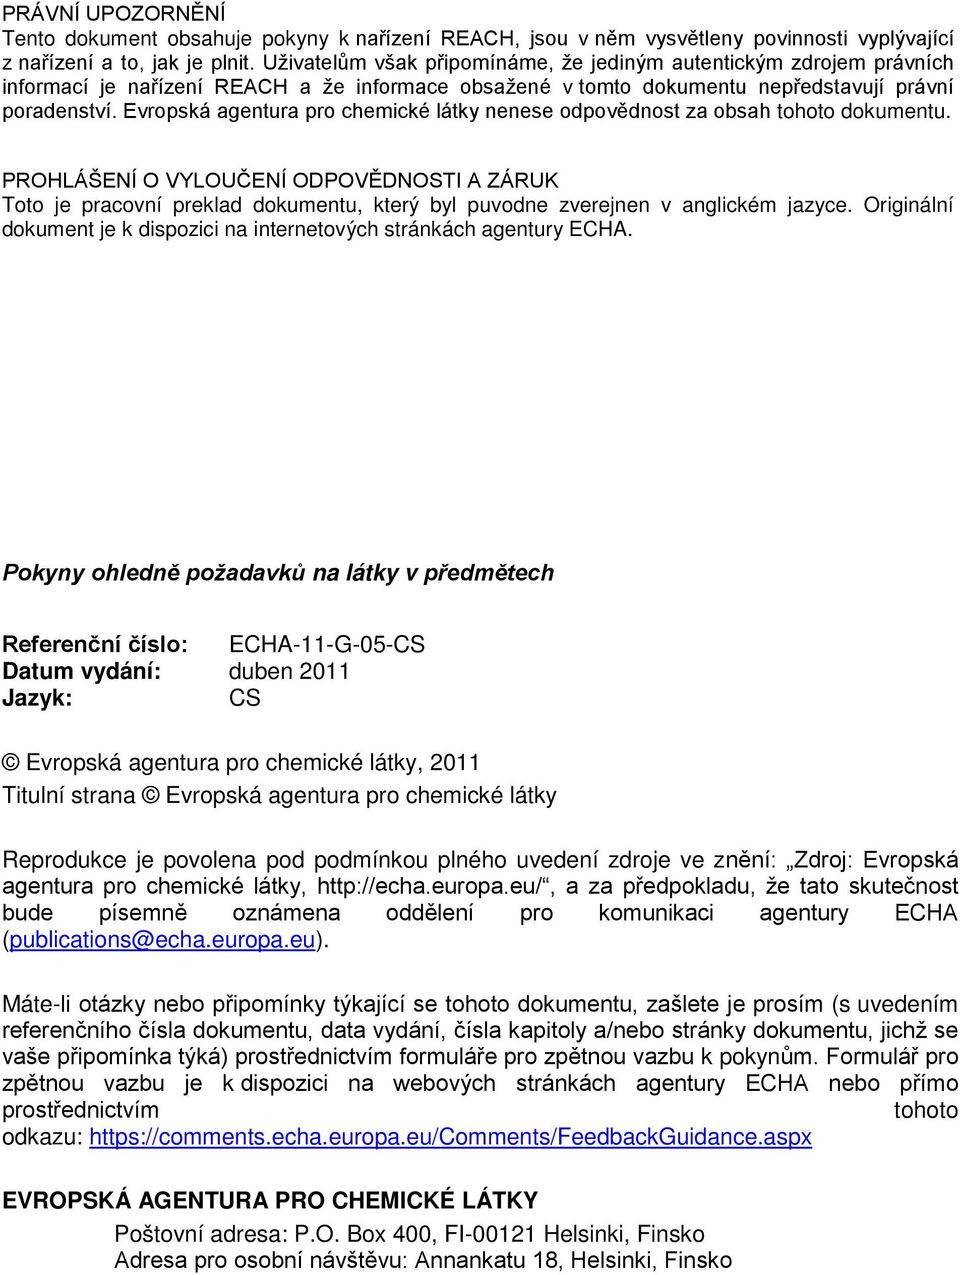 Evropská agentura pro chemické látky nenese odpovědnost za obsah tohoto dokumentu.